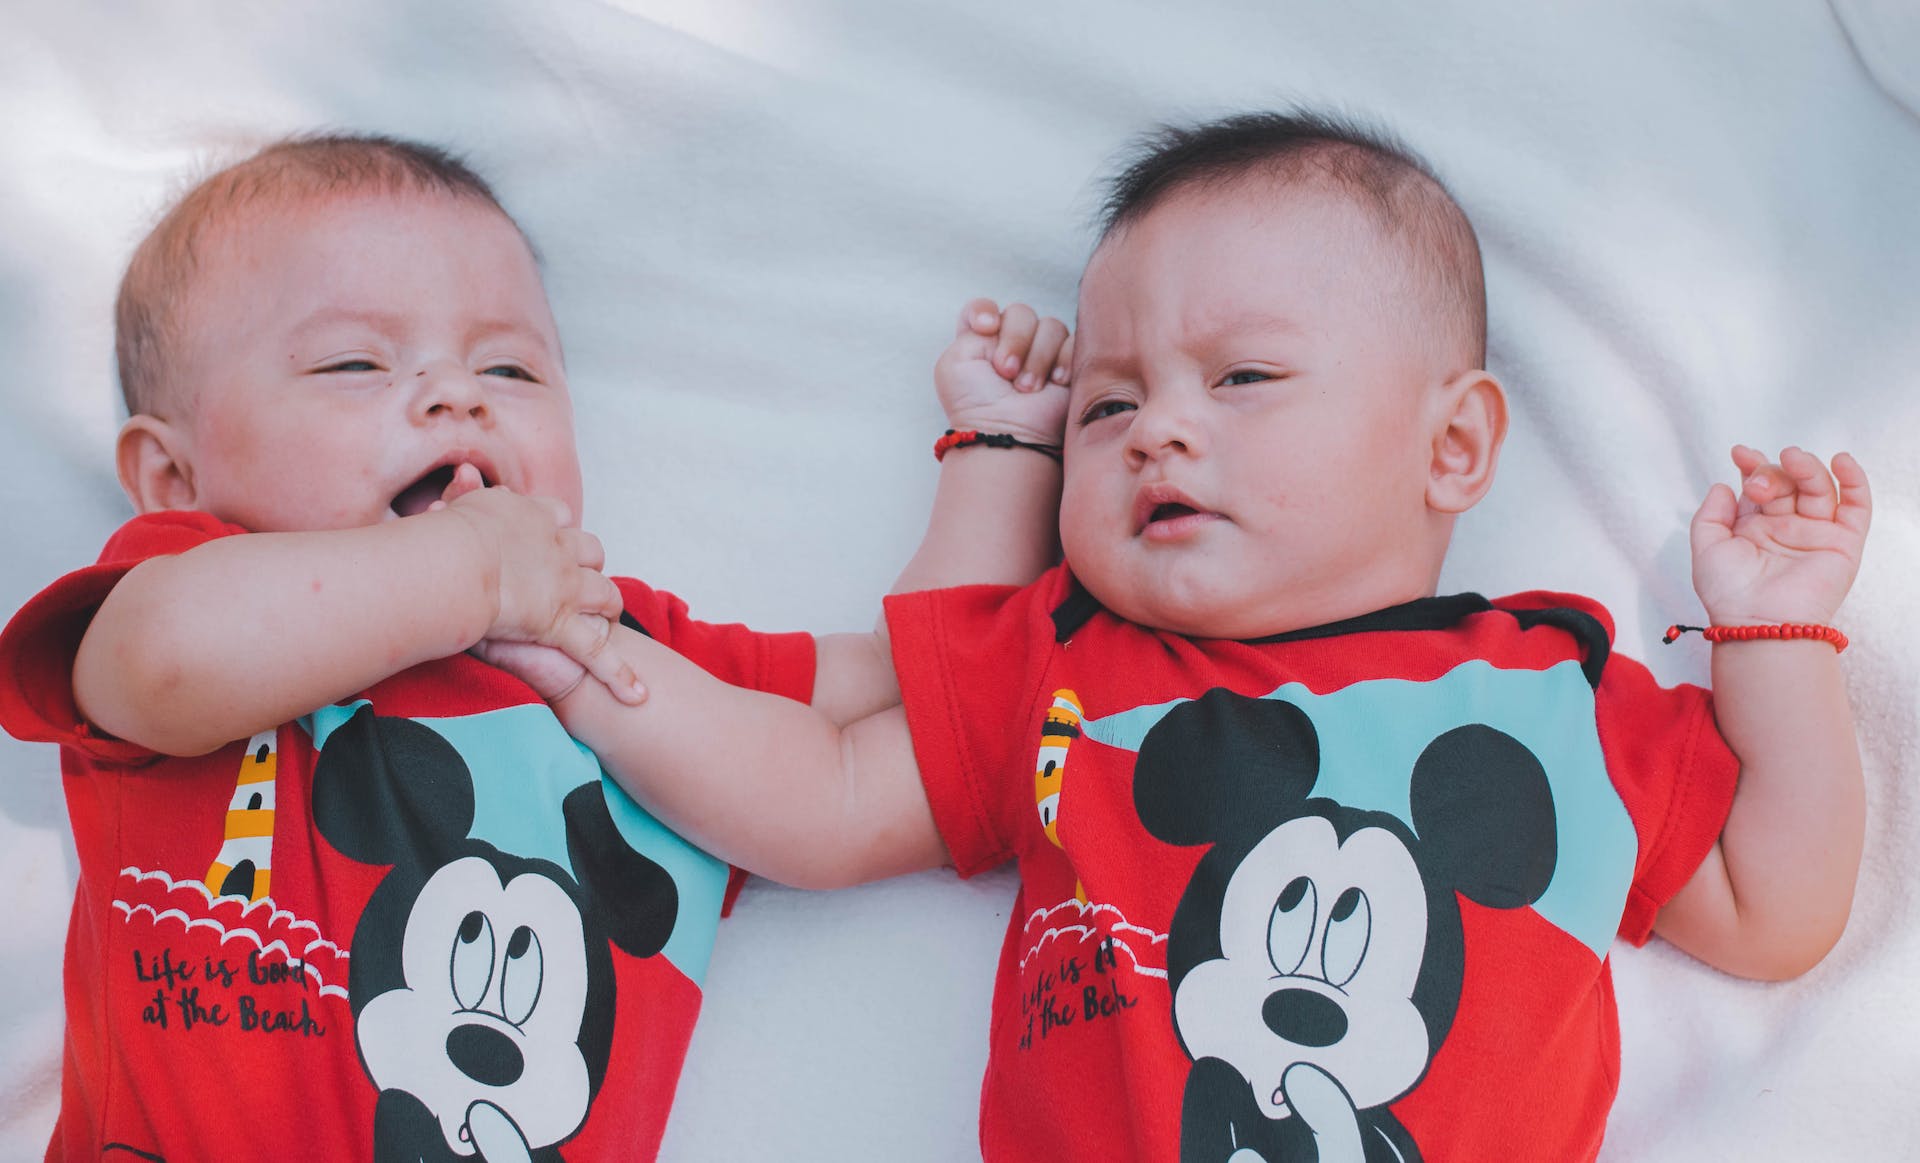 Bébés portant des chemises rouges Mickey Mouse | Source : Pexels